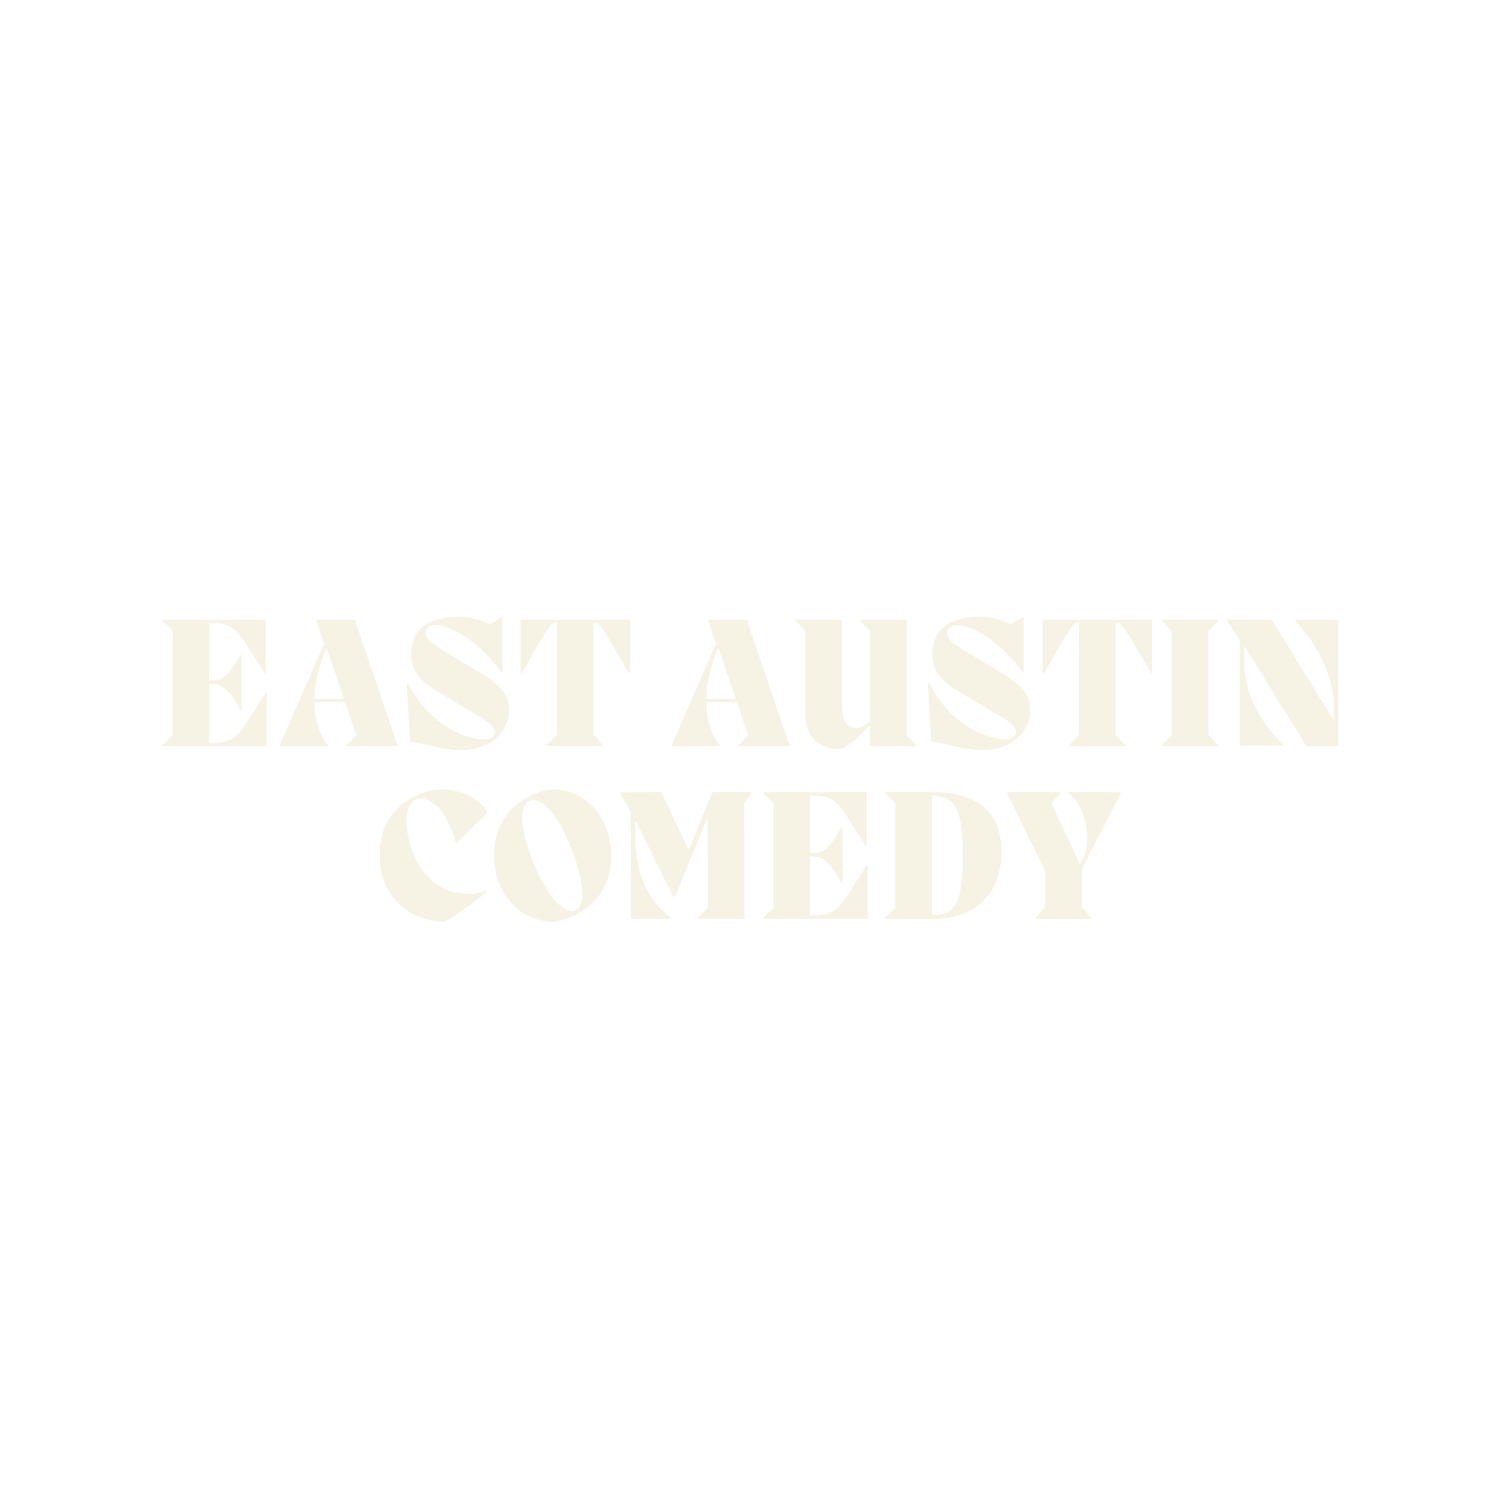 East Austin Comedy Club